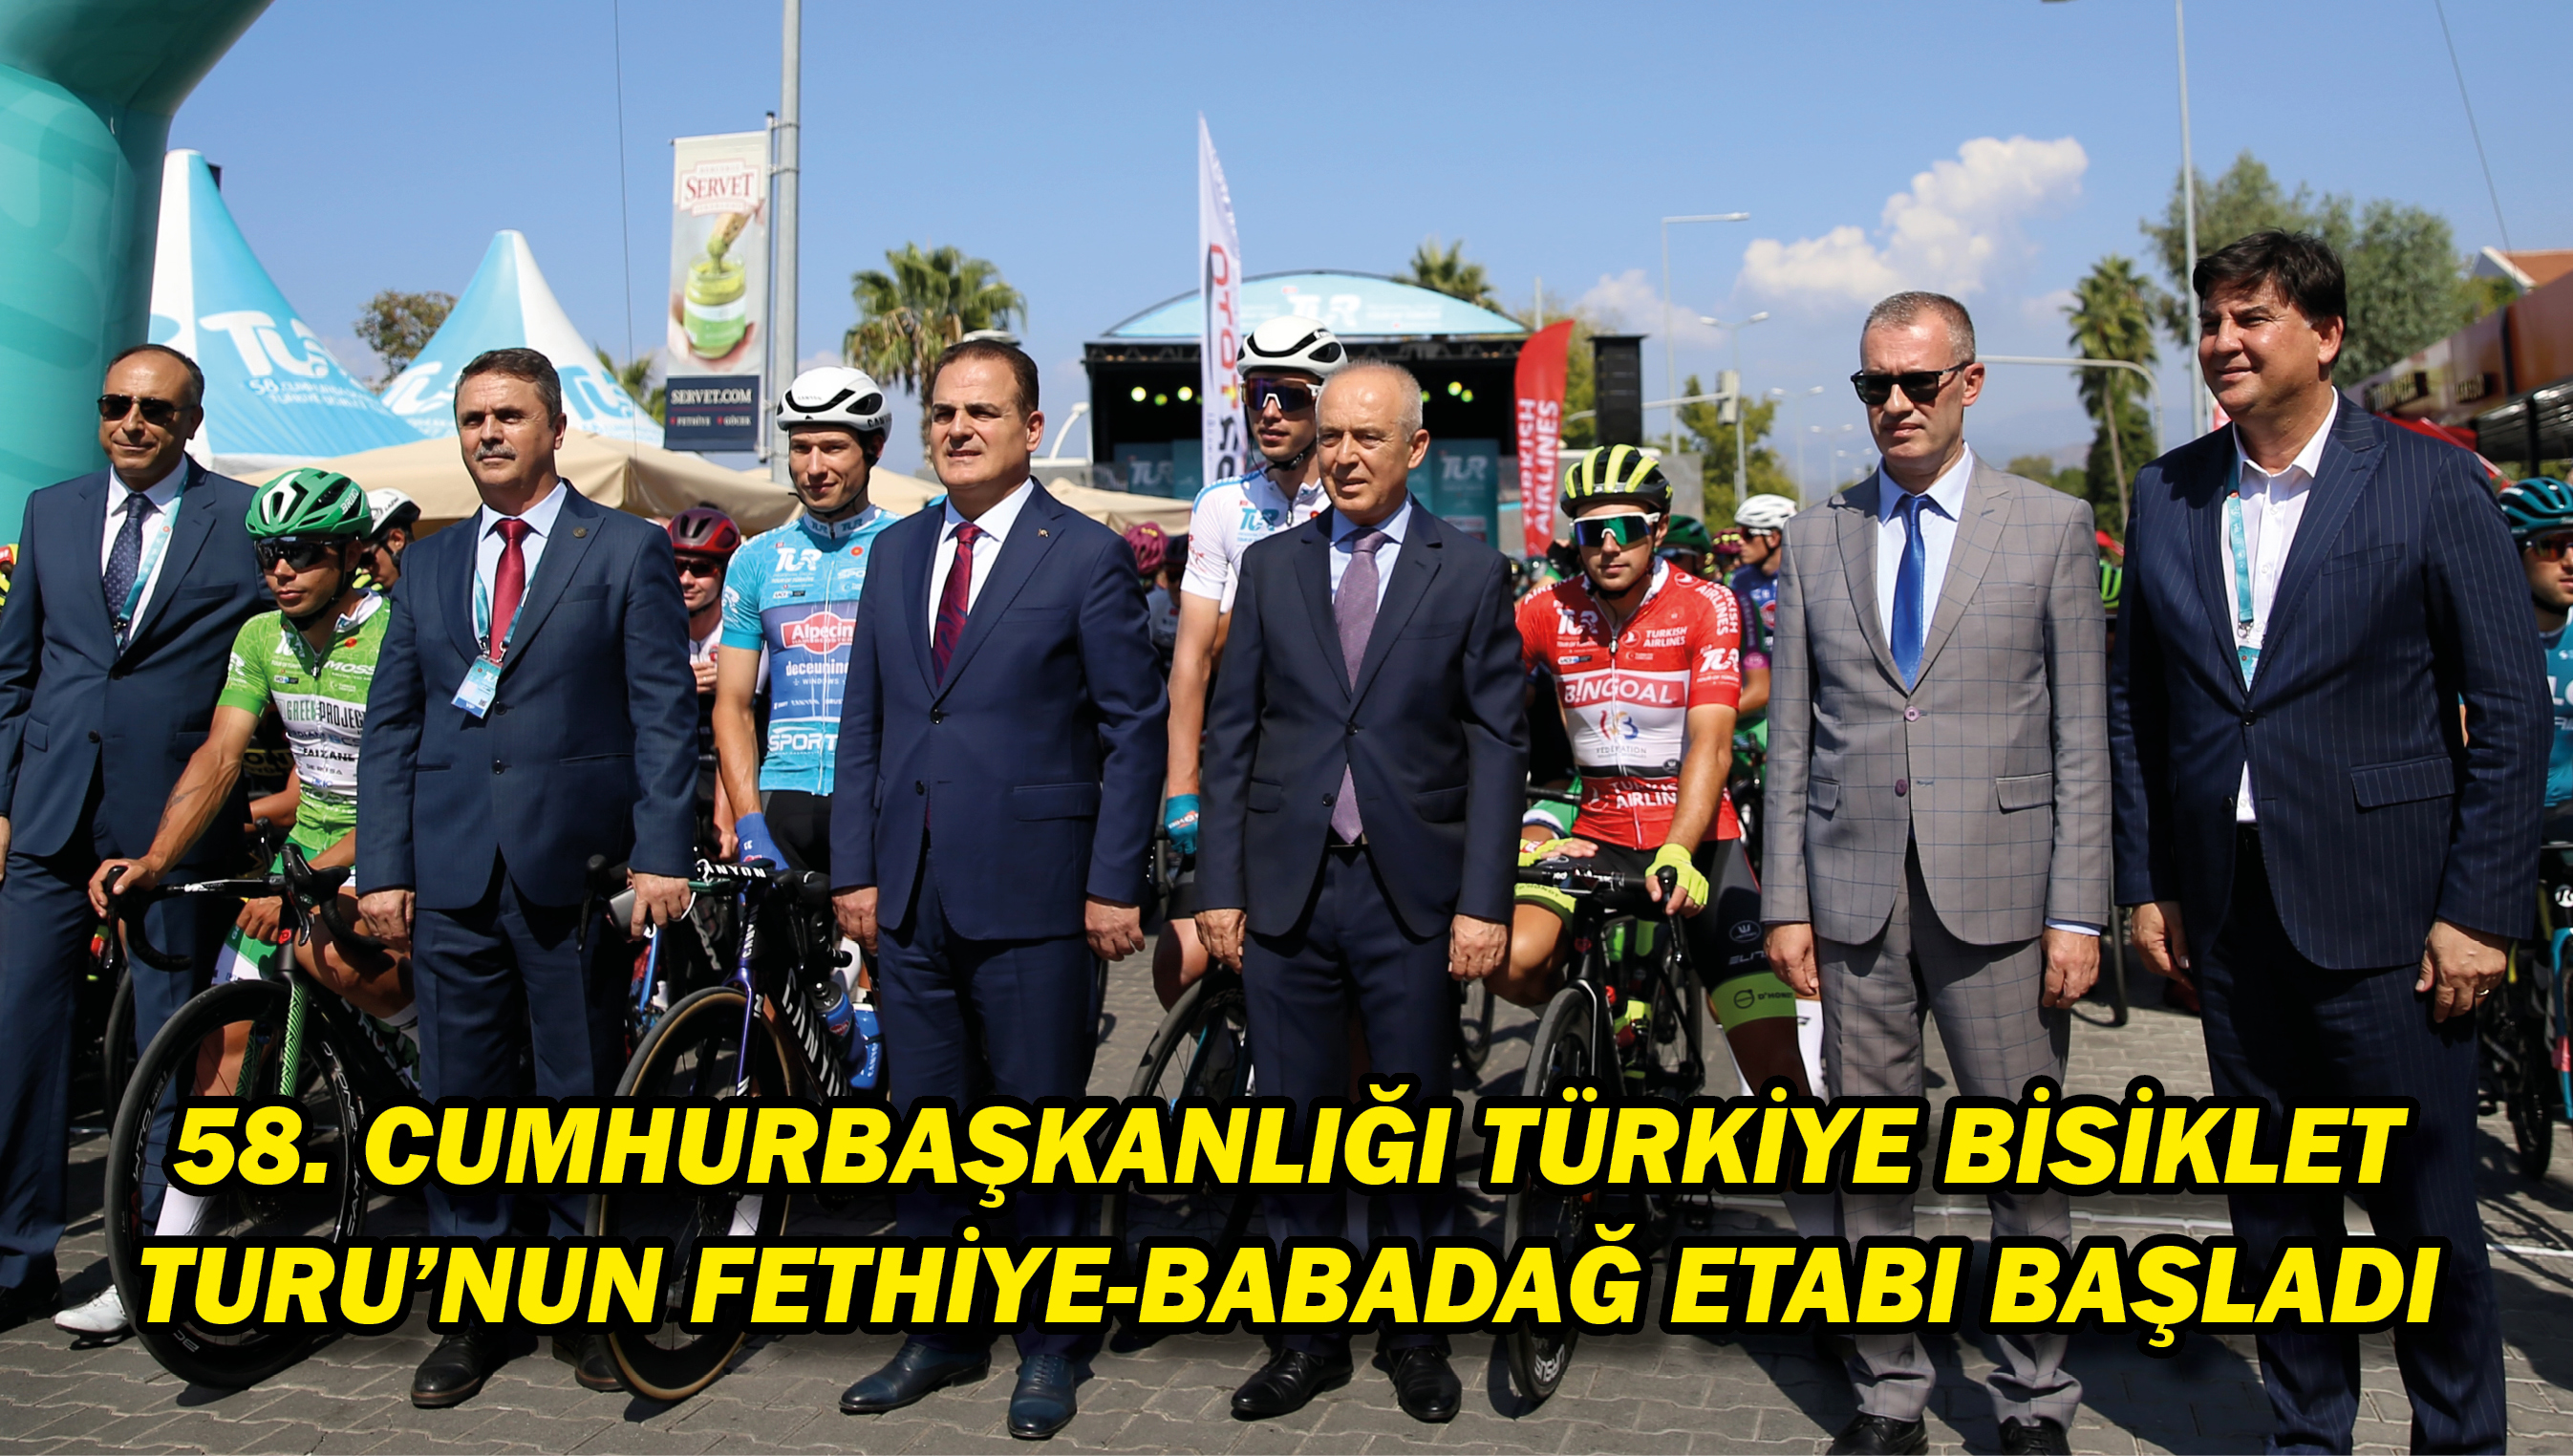 58. Cumhurbaşkanlığı Türkiye Bisiklet Turu'nun Fethiye-Babadağ etabı başladı